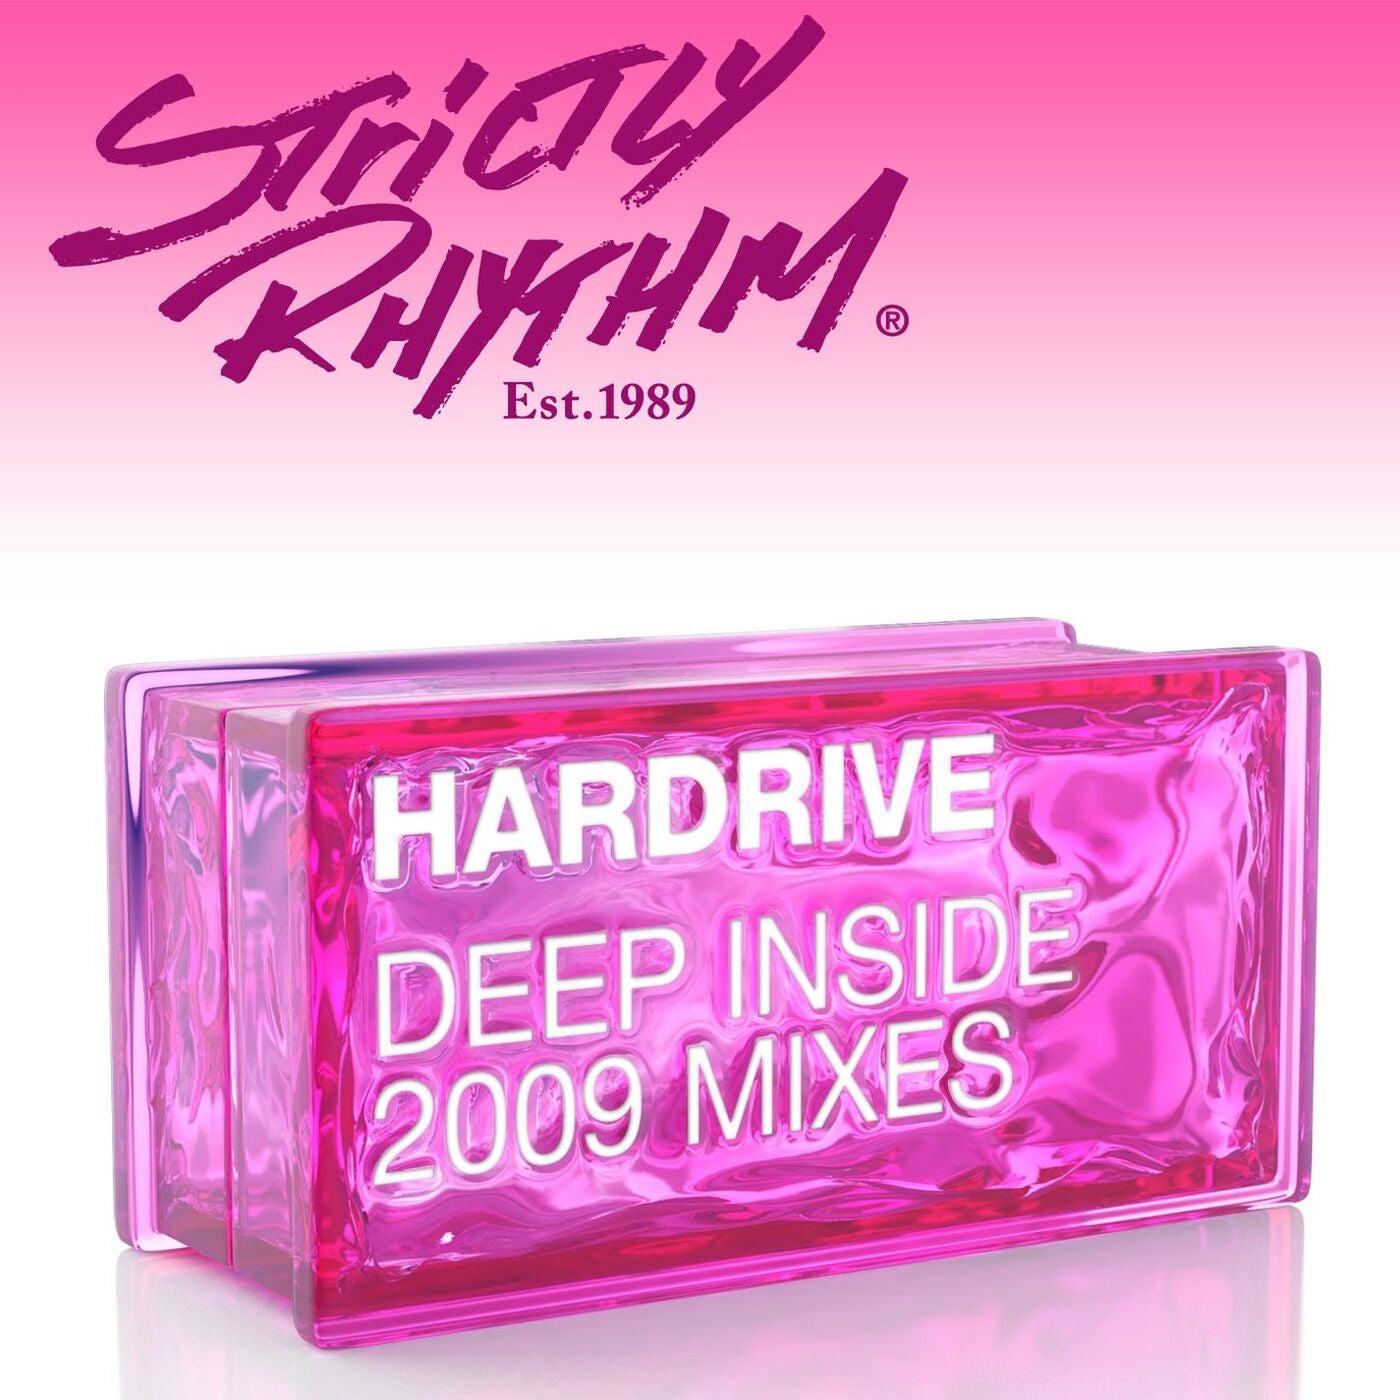 Deep Inside (2009 Mixes)